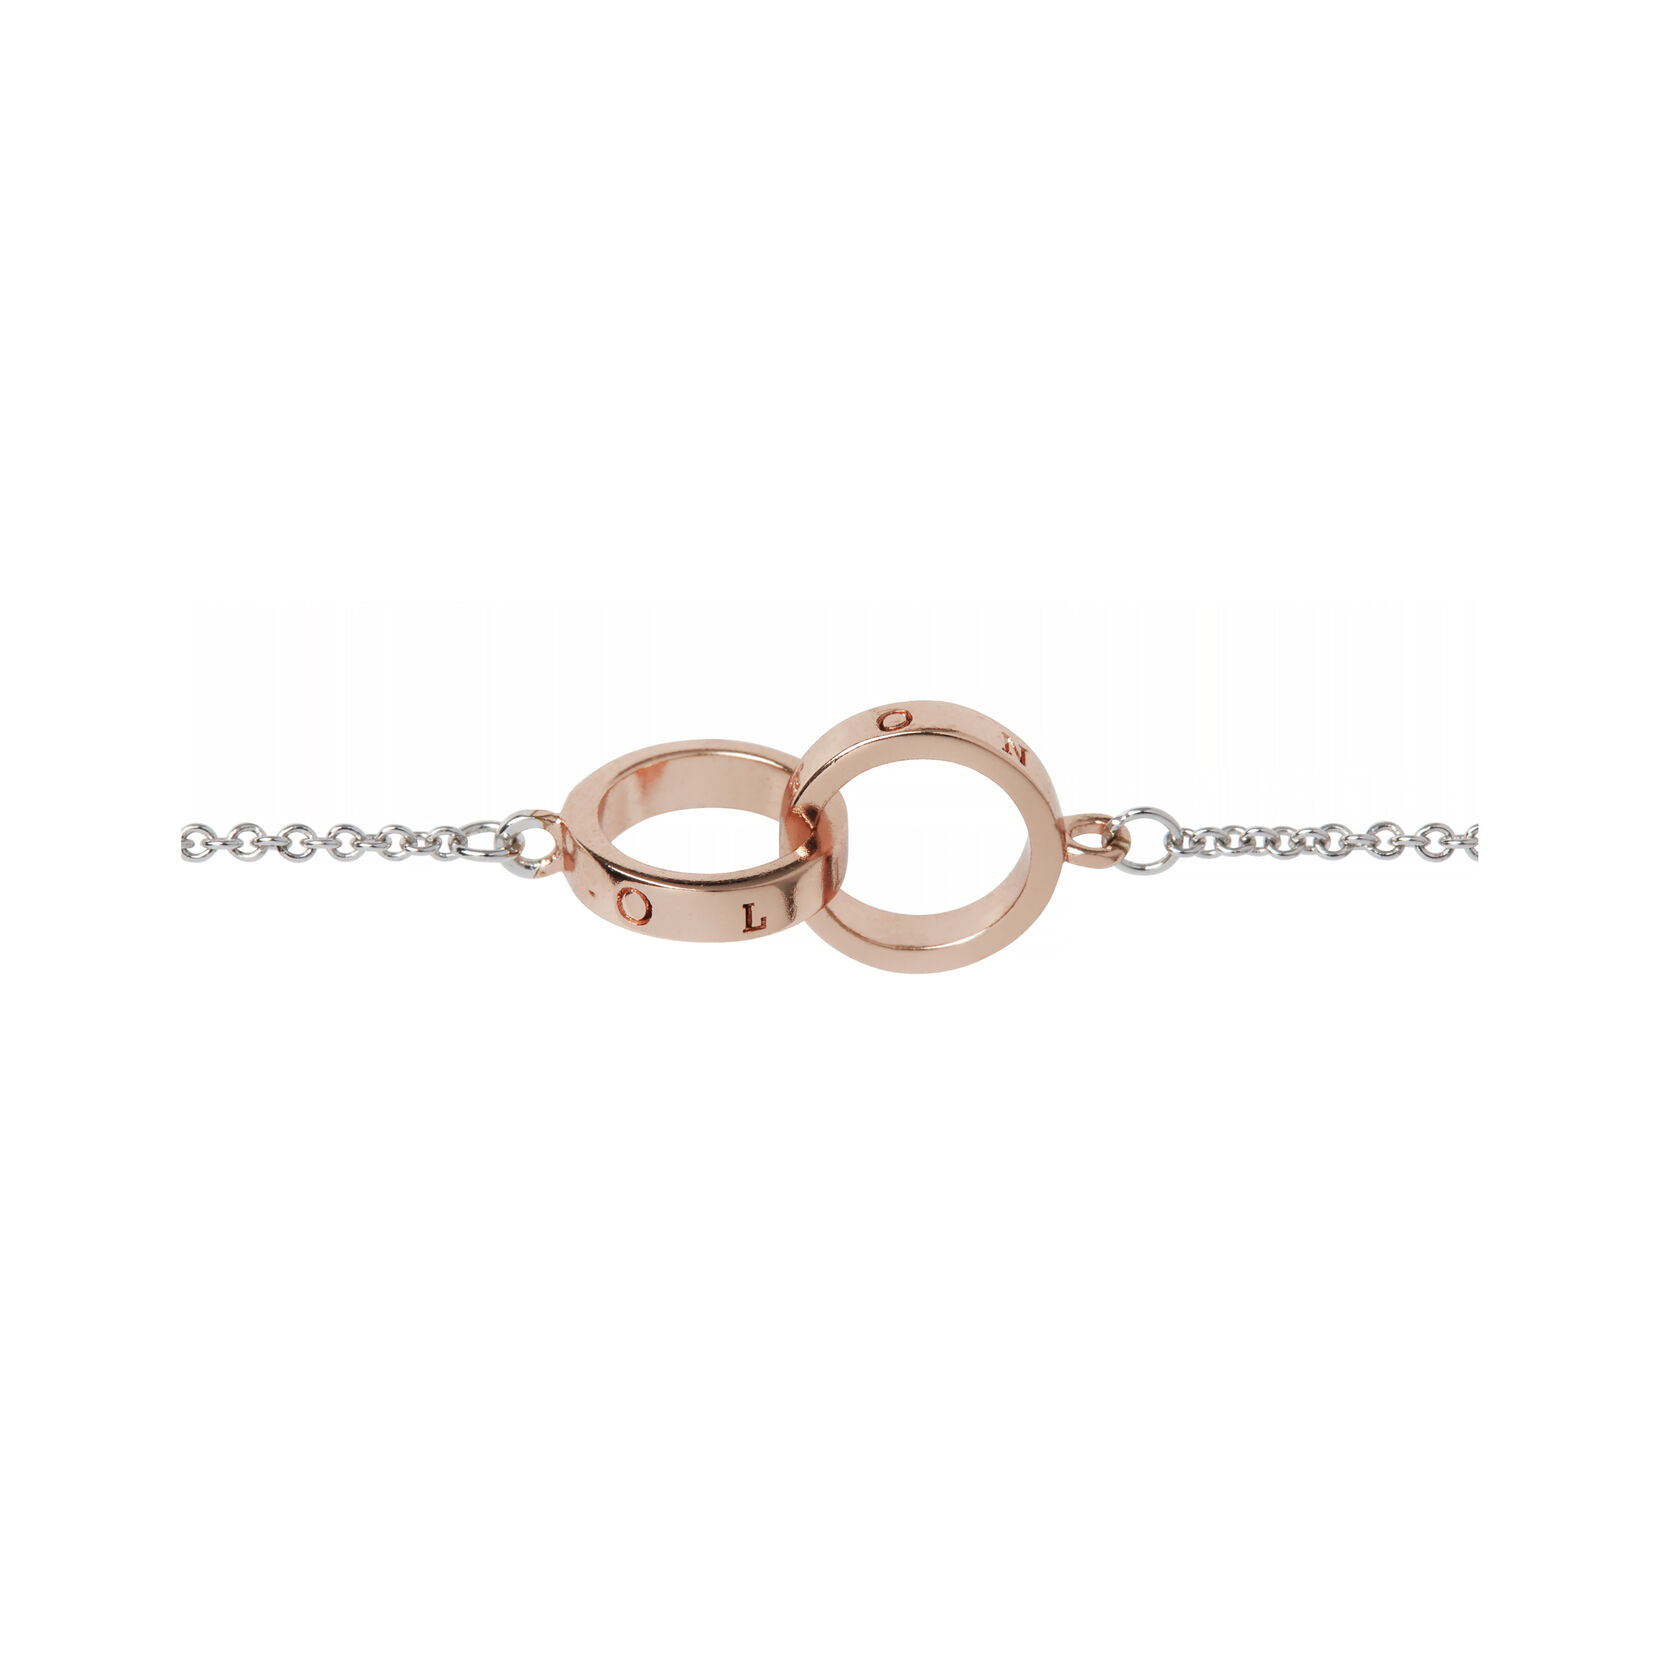 Silver & Rose Gold Interlink Bracelet